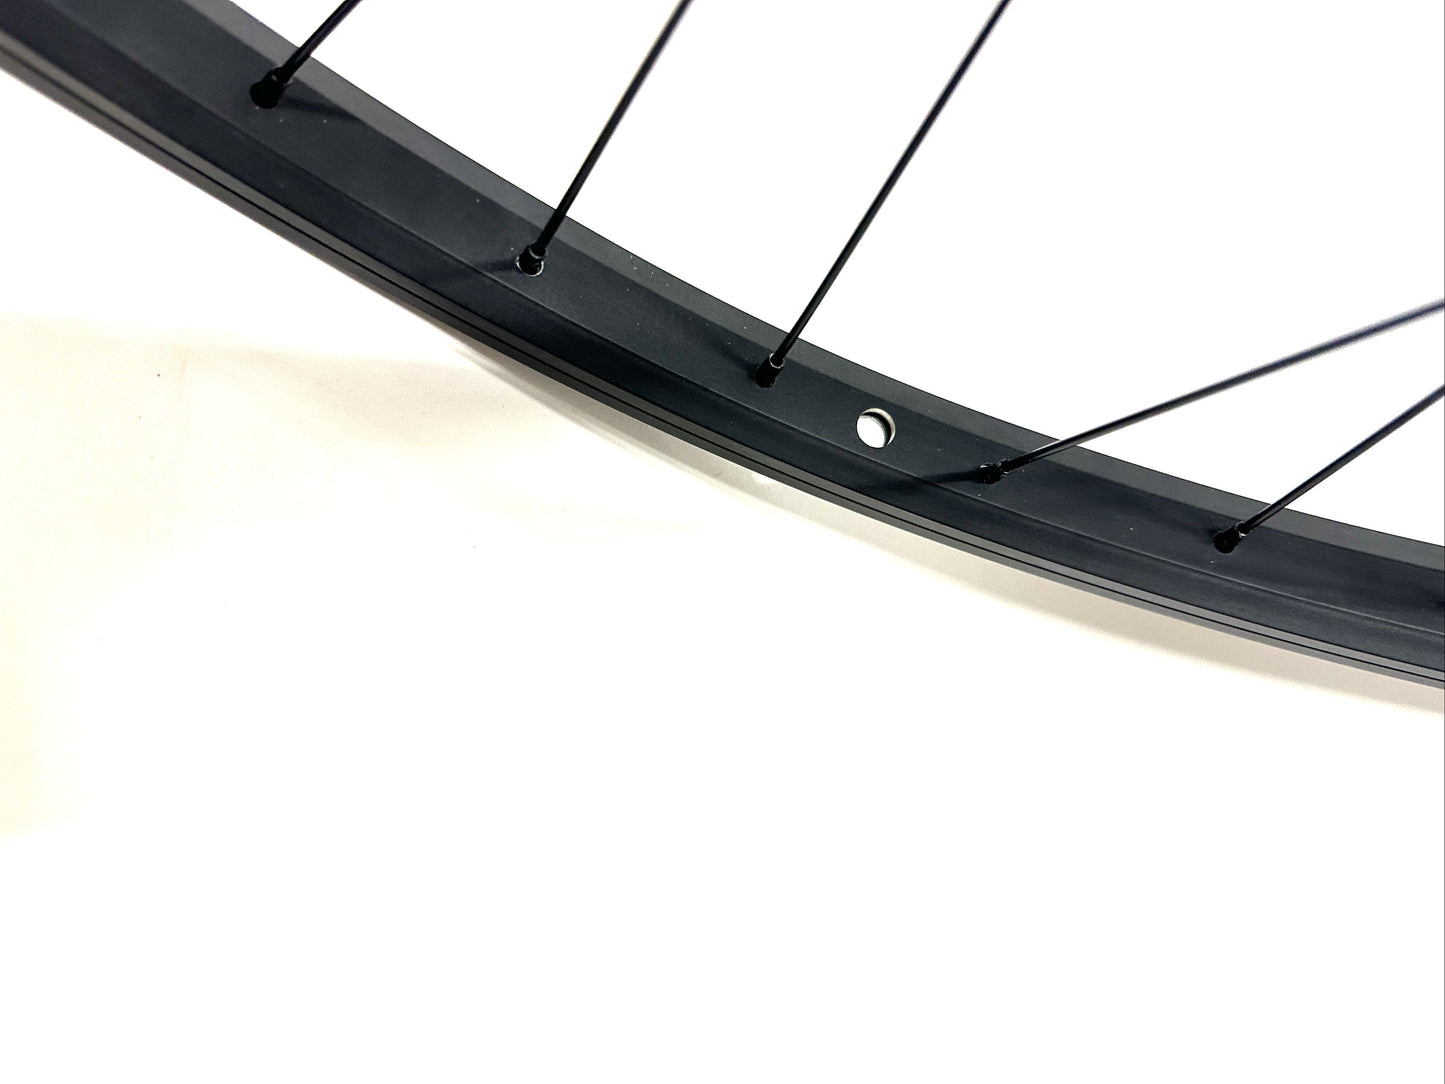 Framed 26" BMX Bike Alloy Sealed Bearing Front Wheel 100mm Bolt-On BLACK NEW